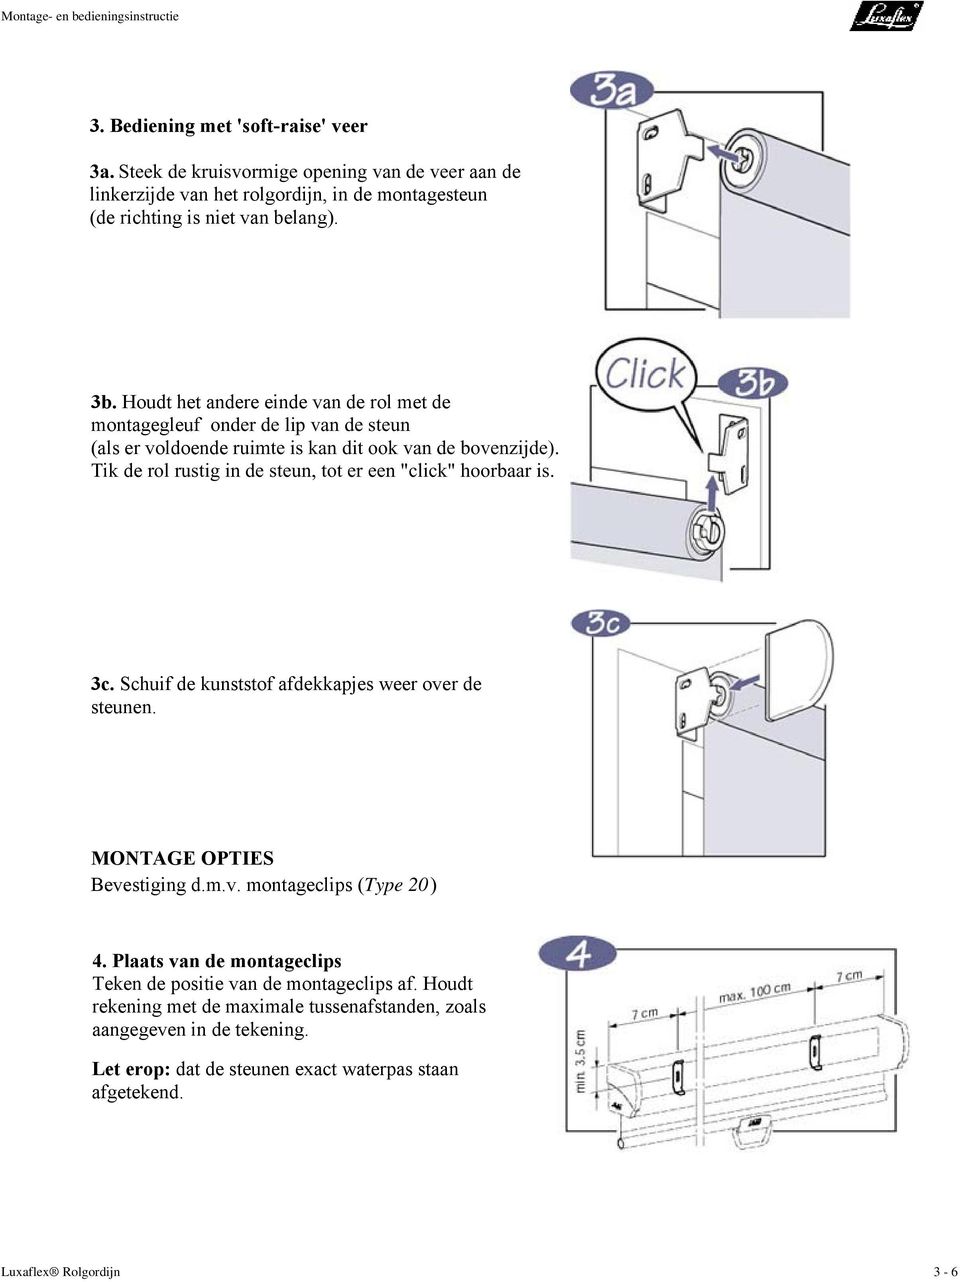 behalve voor bijtend Losjes Montage- en bedieningsinstructie voor Luxaflex Rolgordijn - PDF Free  Download